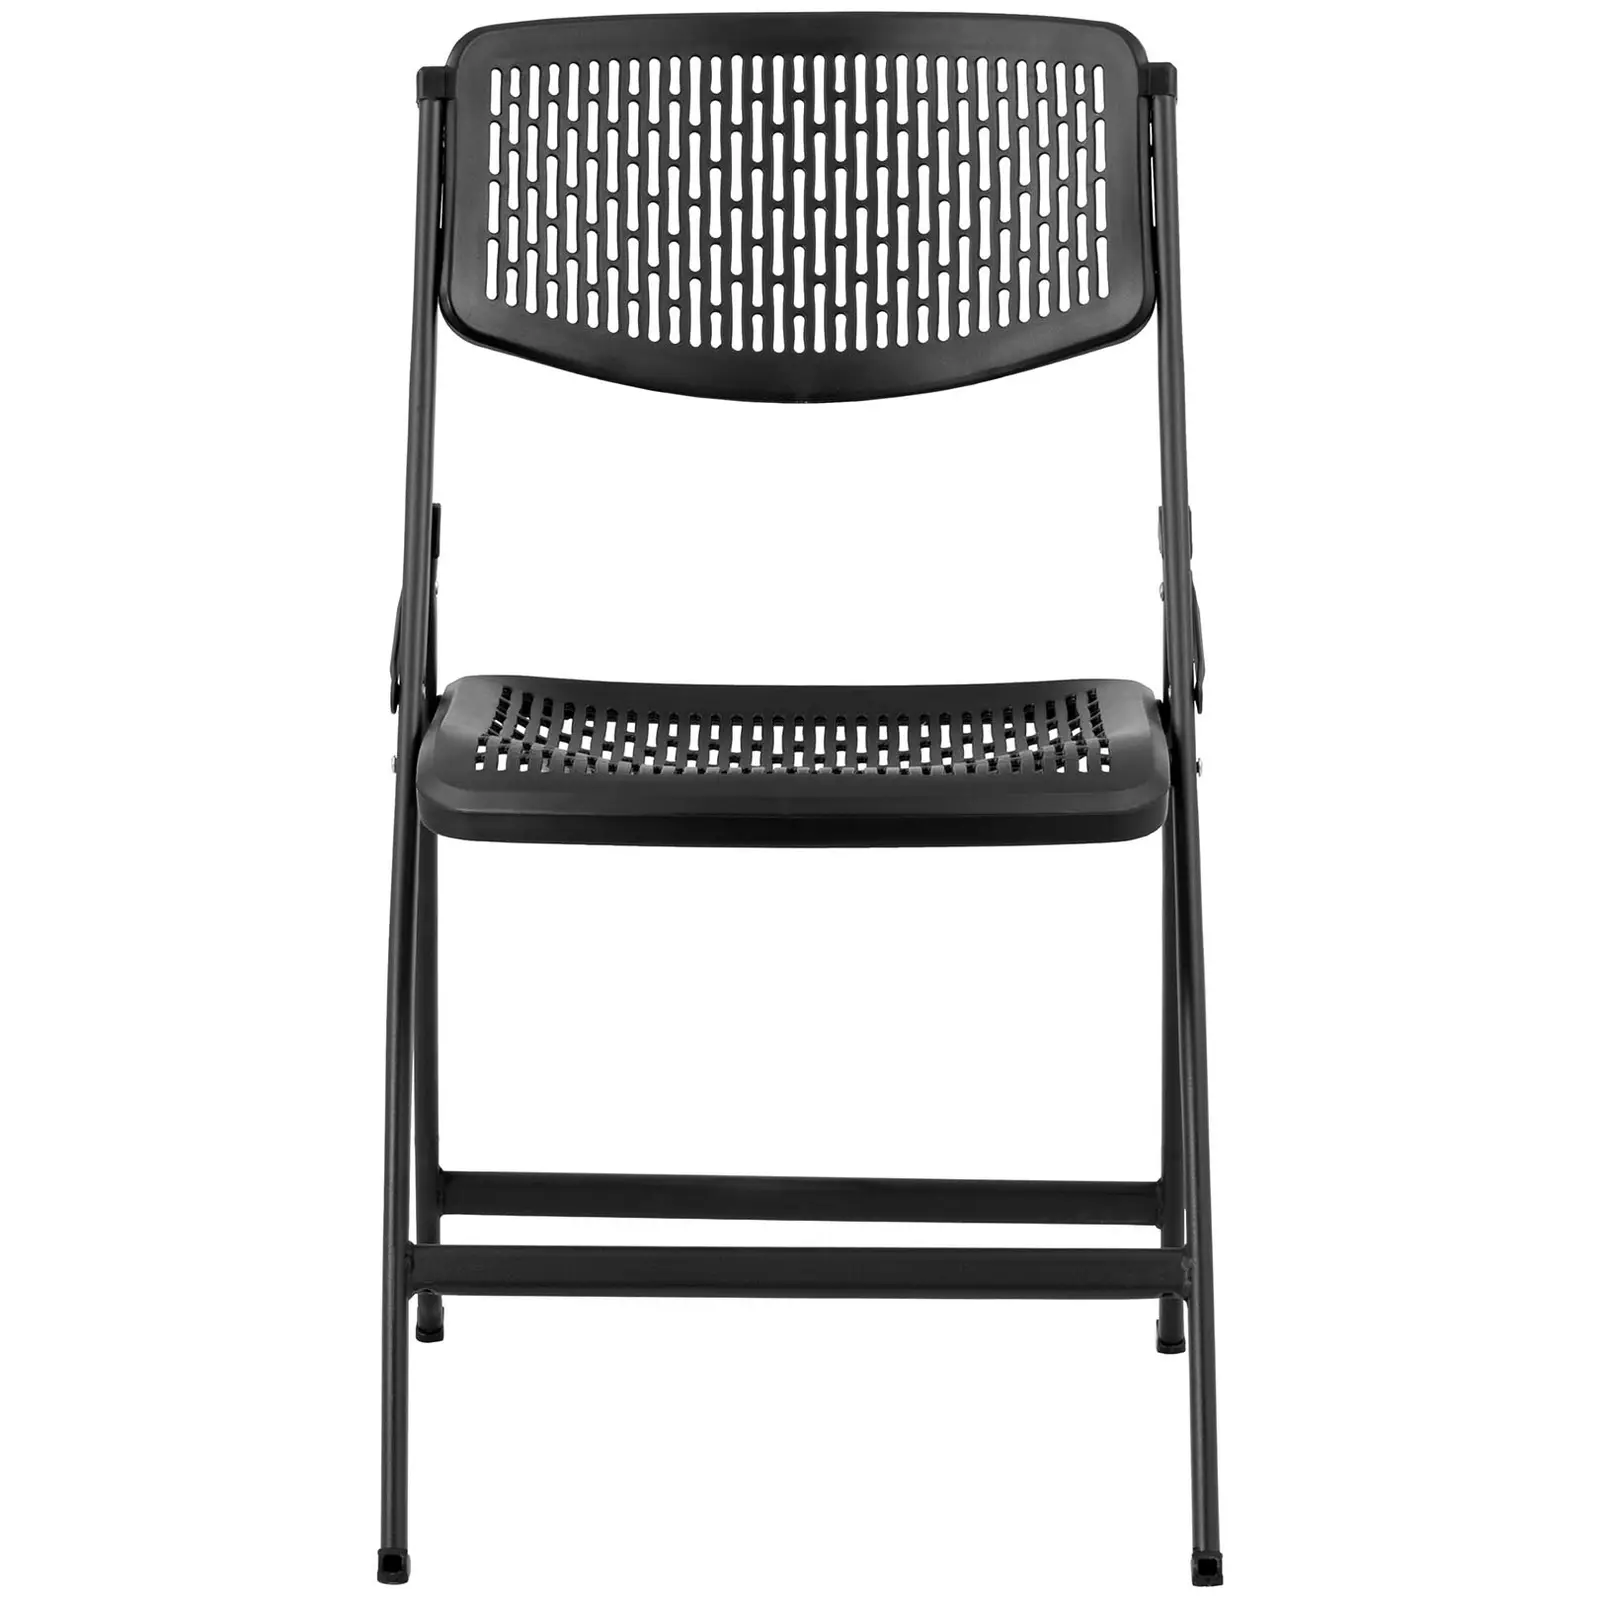 Chaise - Lot de 5 - 150 kg max. - Surface d'assise de 430 x 430 x 440 mm - Coloris noir - Conception pliante